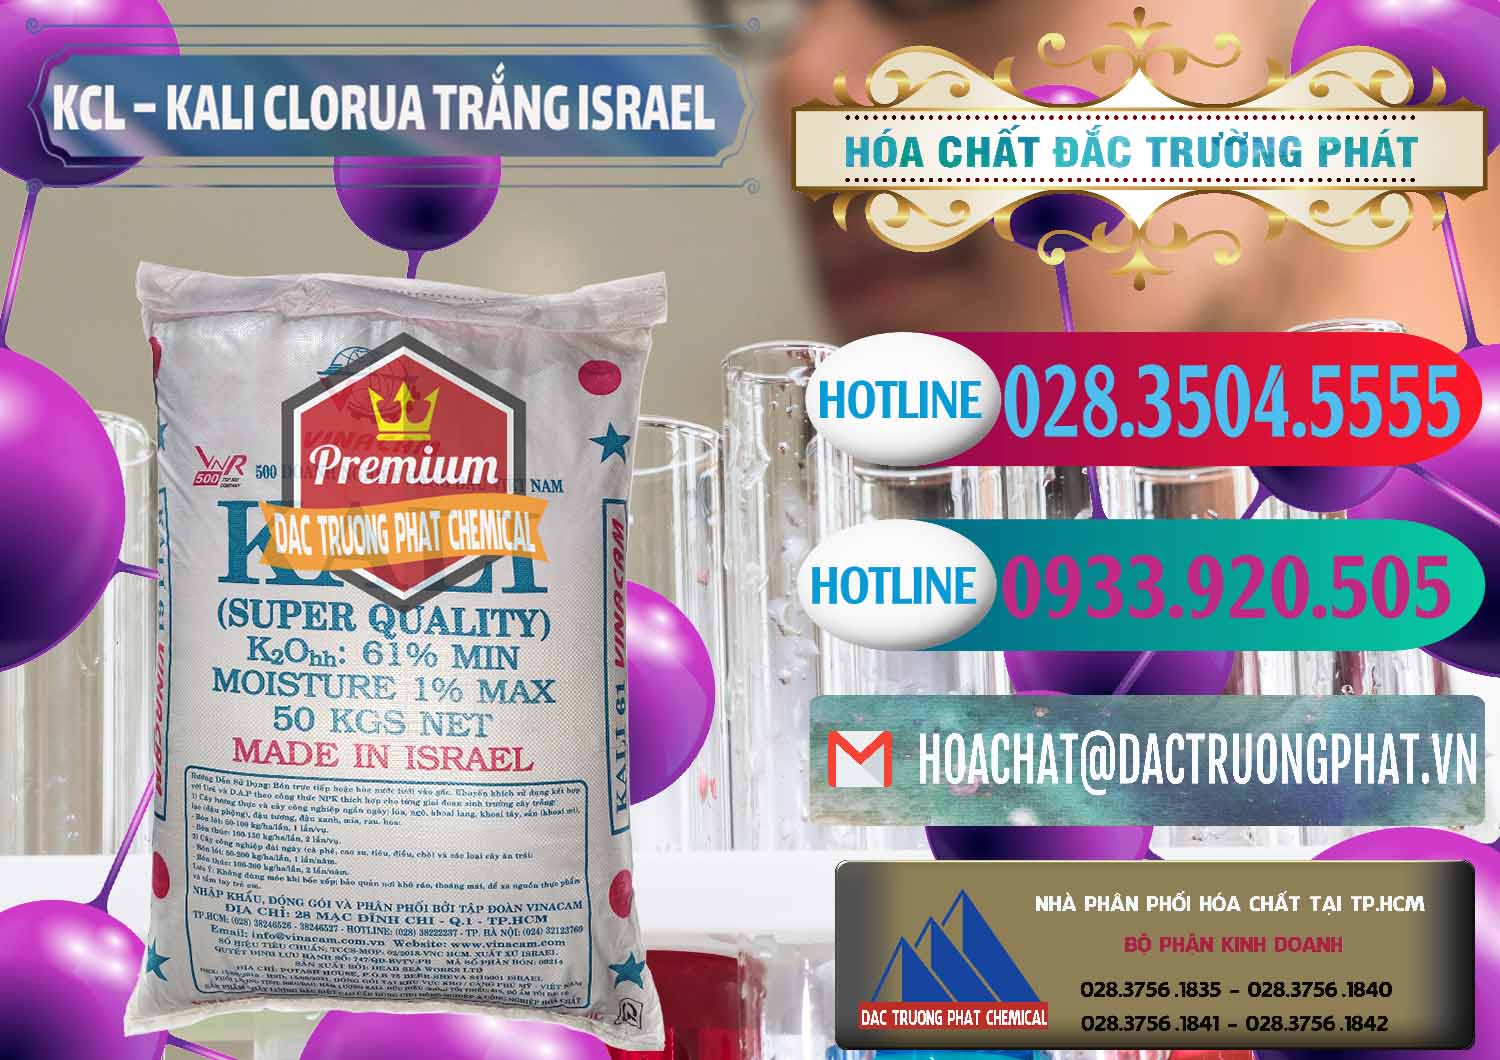 Nơi chuyên cung cấp ( bán ) KCL – Kali Clorua Trắng Israel - 0087 - Cty chuyên bán & cung cấp hóa chất tại TP.HCM - truongphat.vn